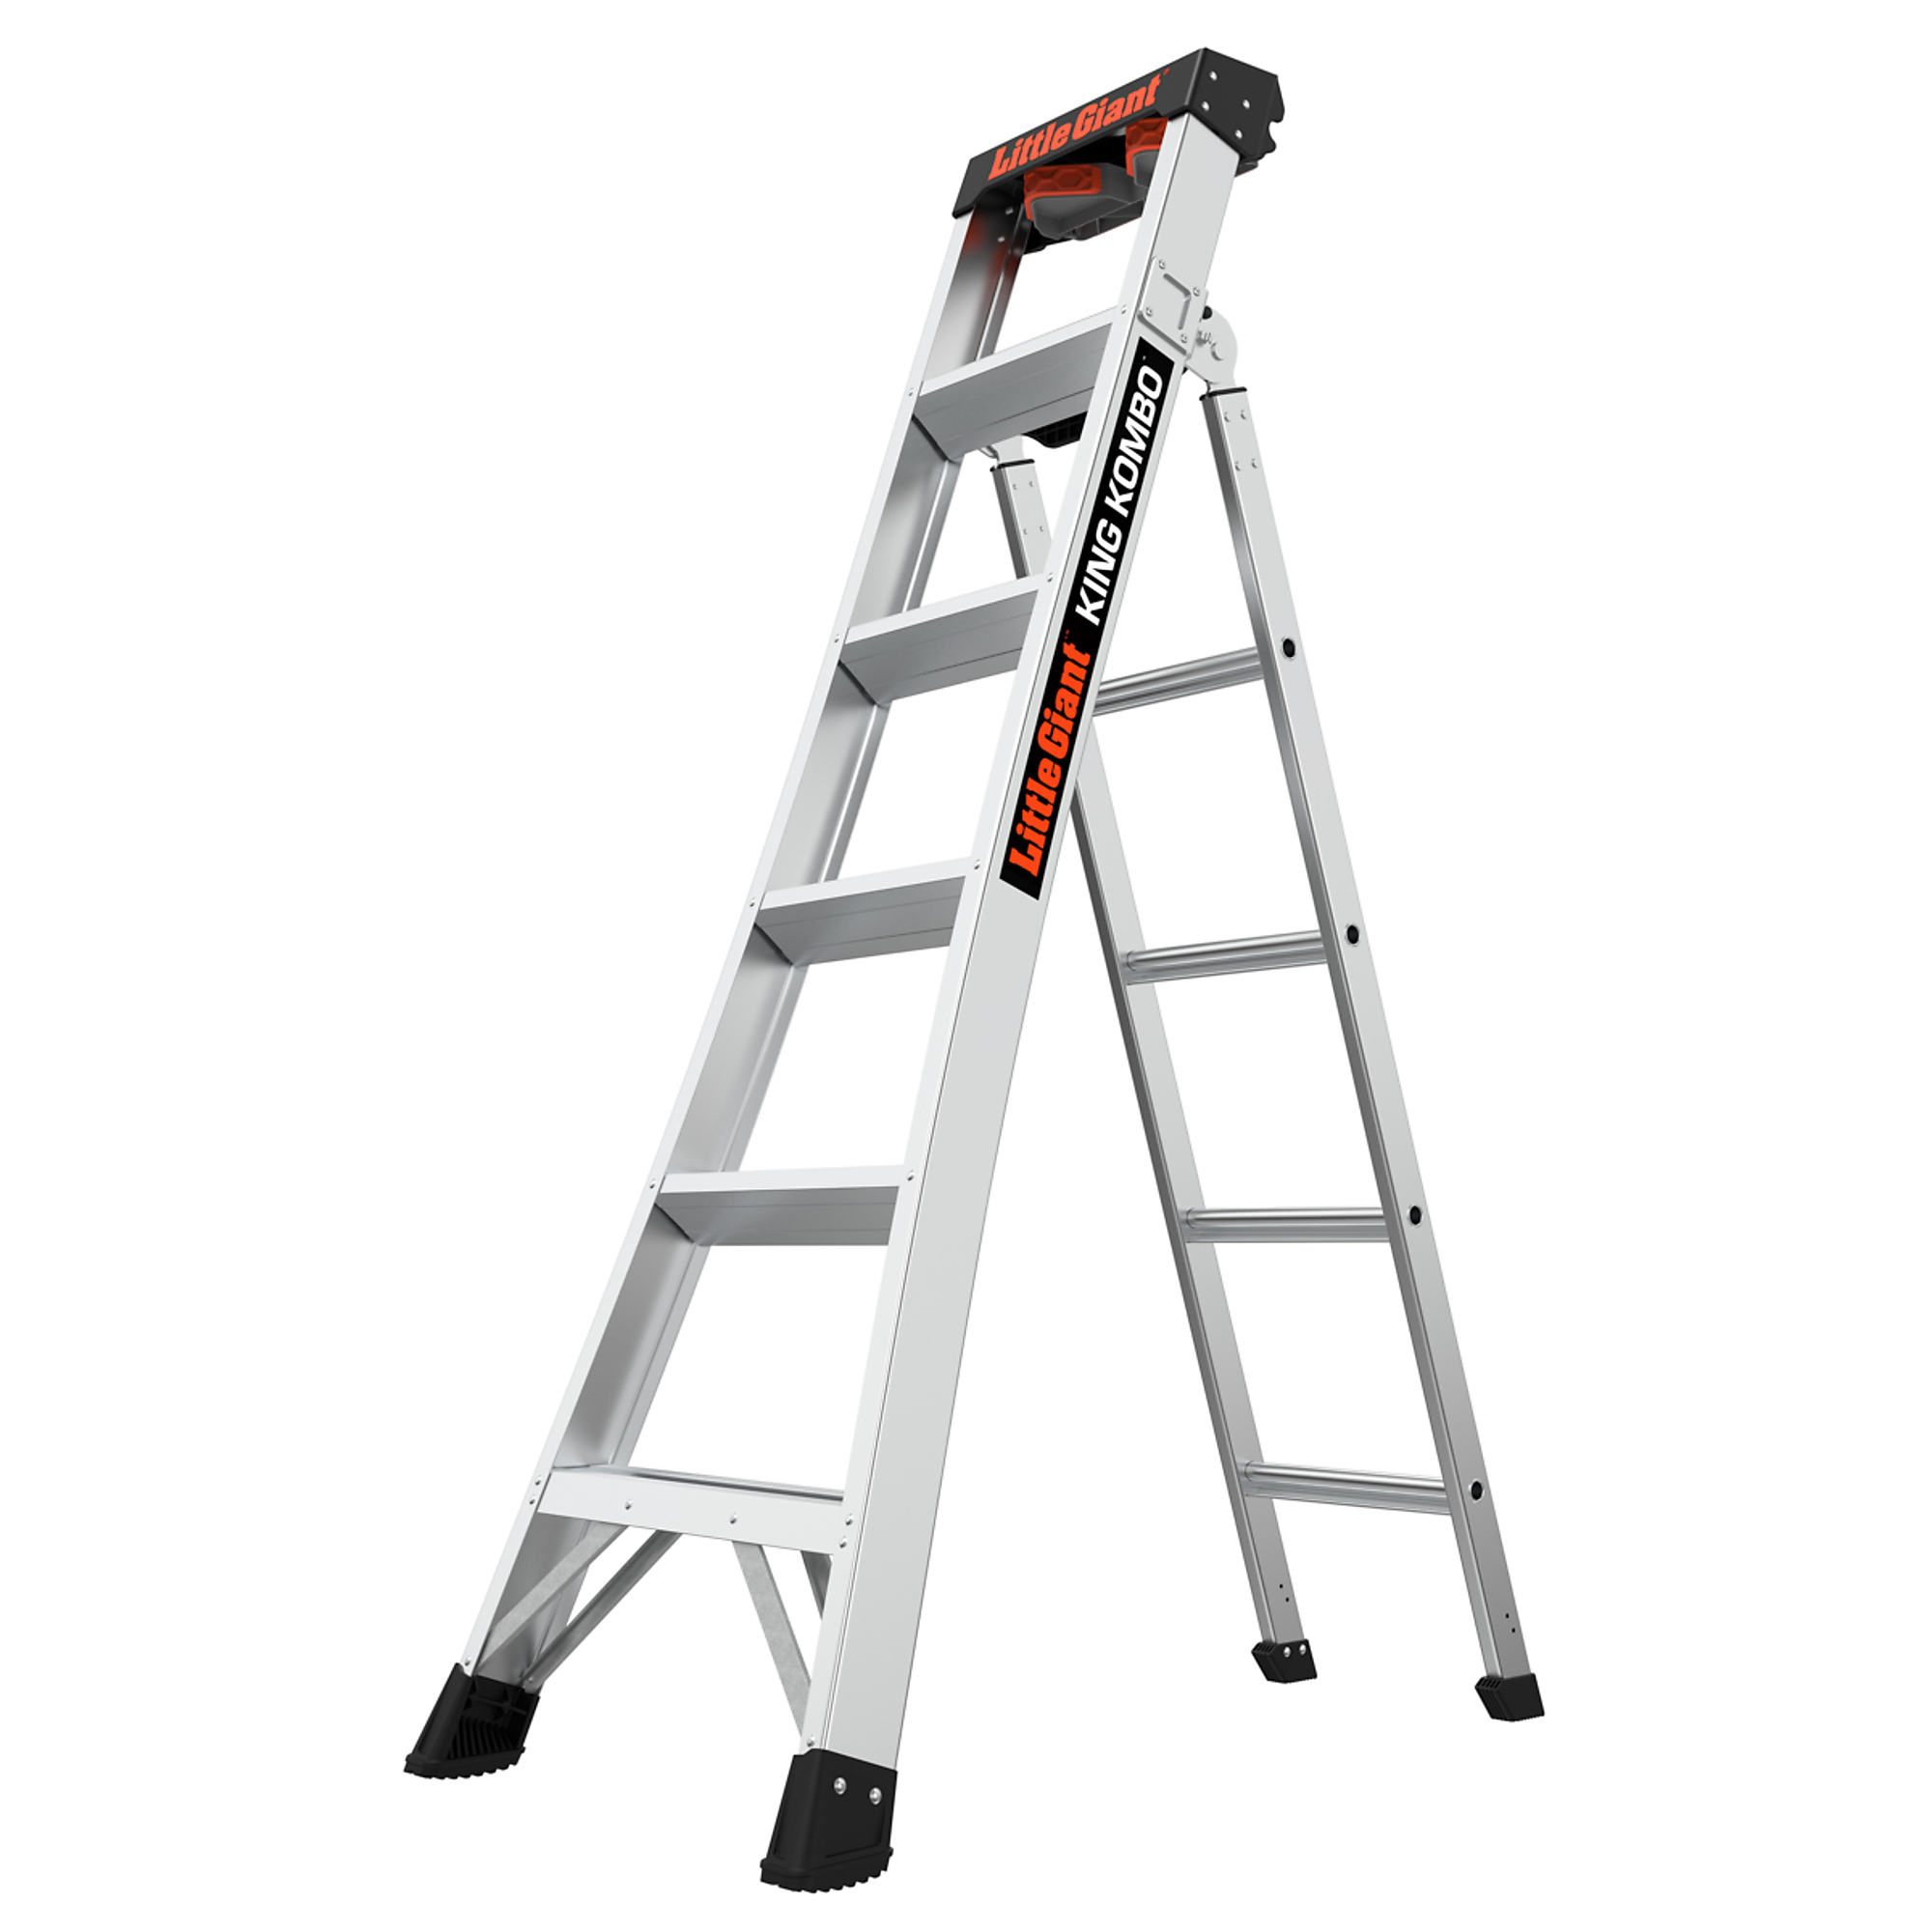 KING KOMBO Professional 6ft. 300lb Alum Combo Ladder, Height 6 ft, Capacity 300 lb, Material Aluminum, Model - Little Giant Ladder 14906-001